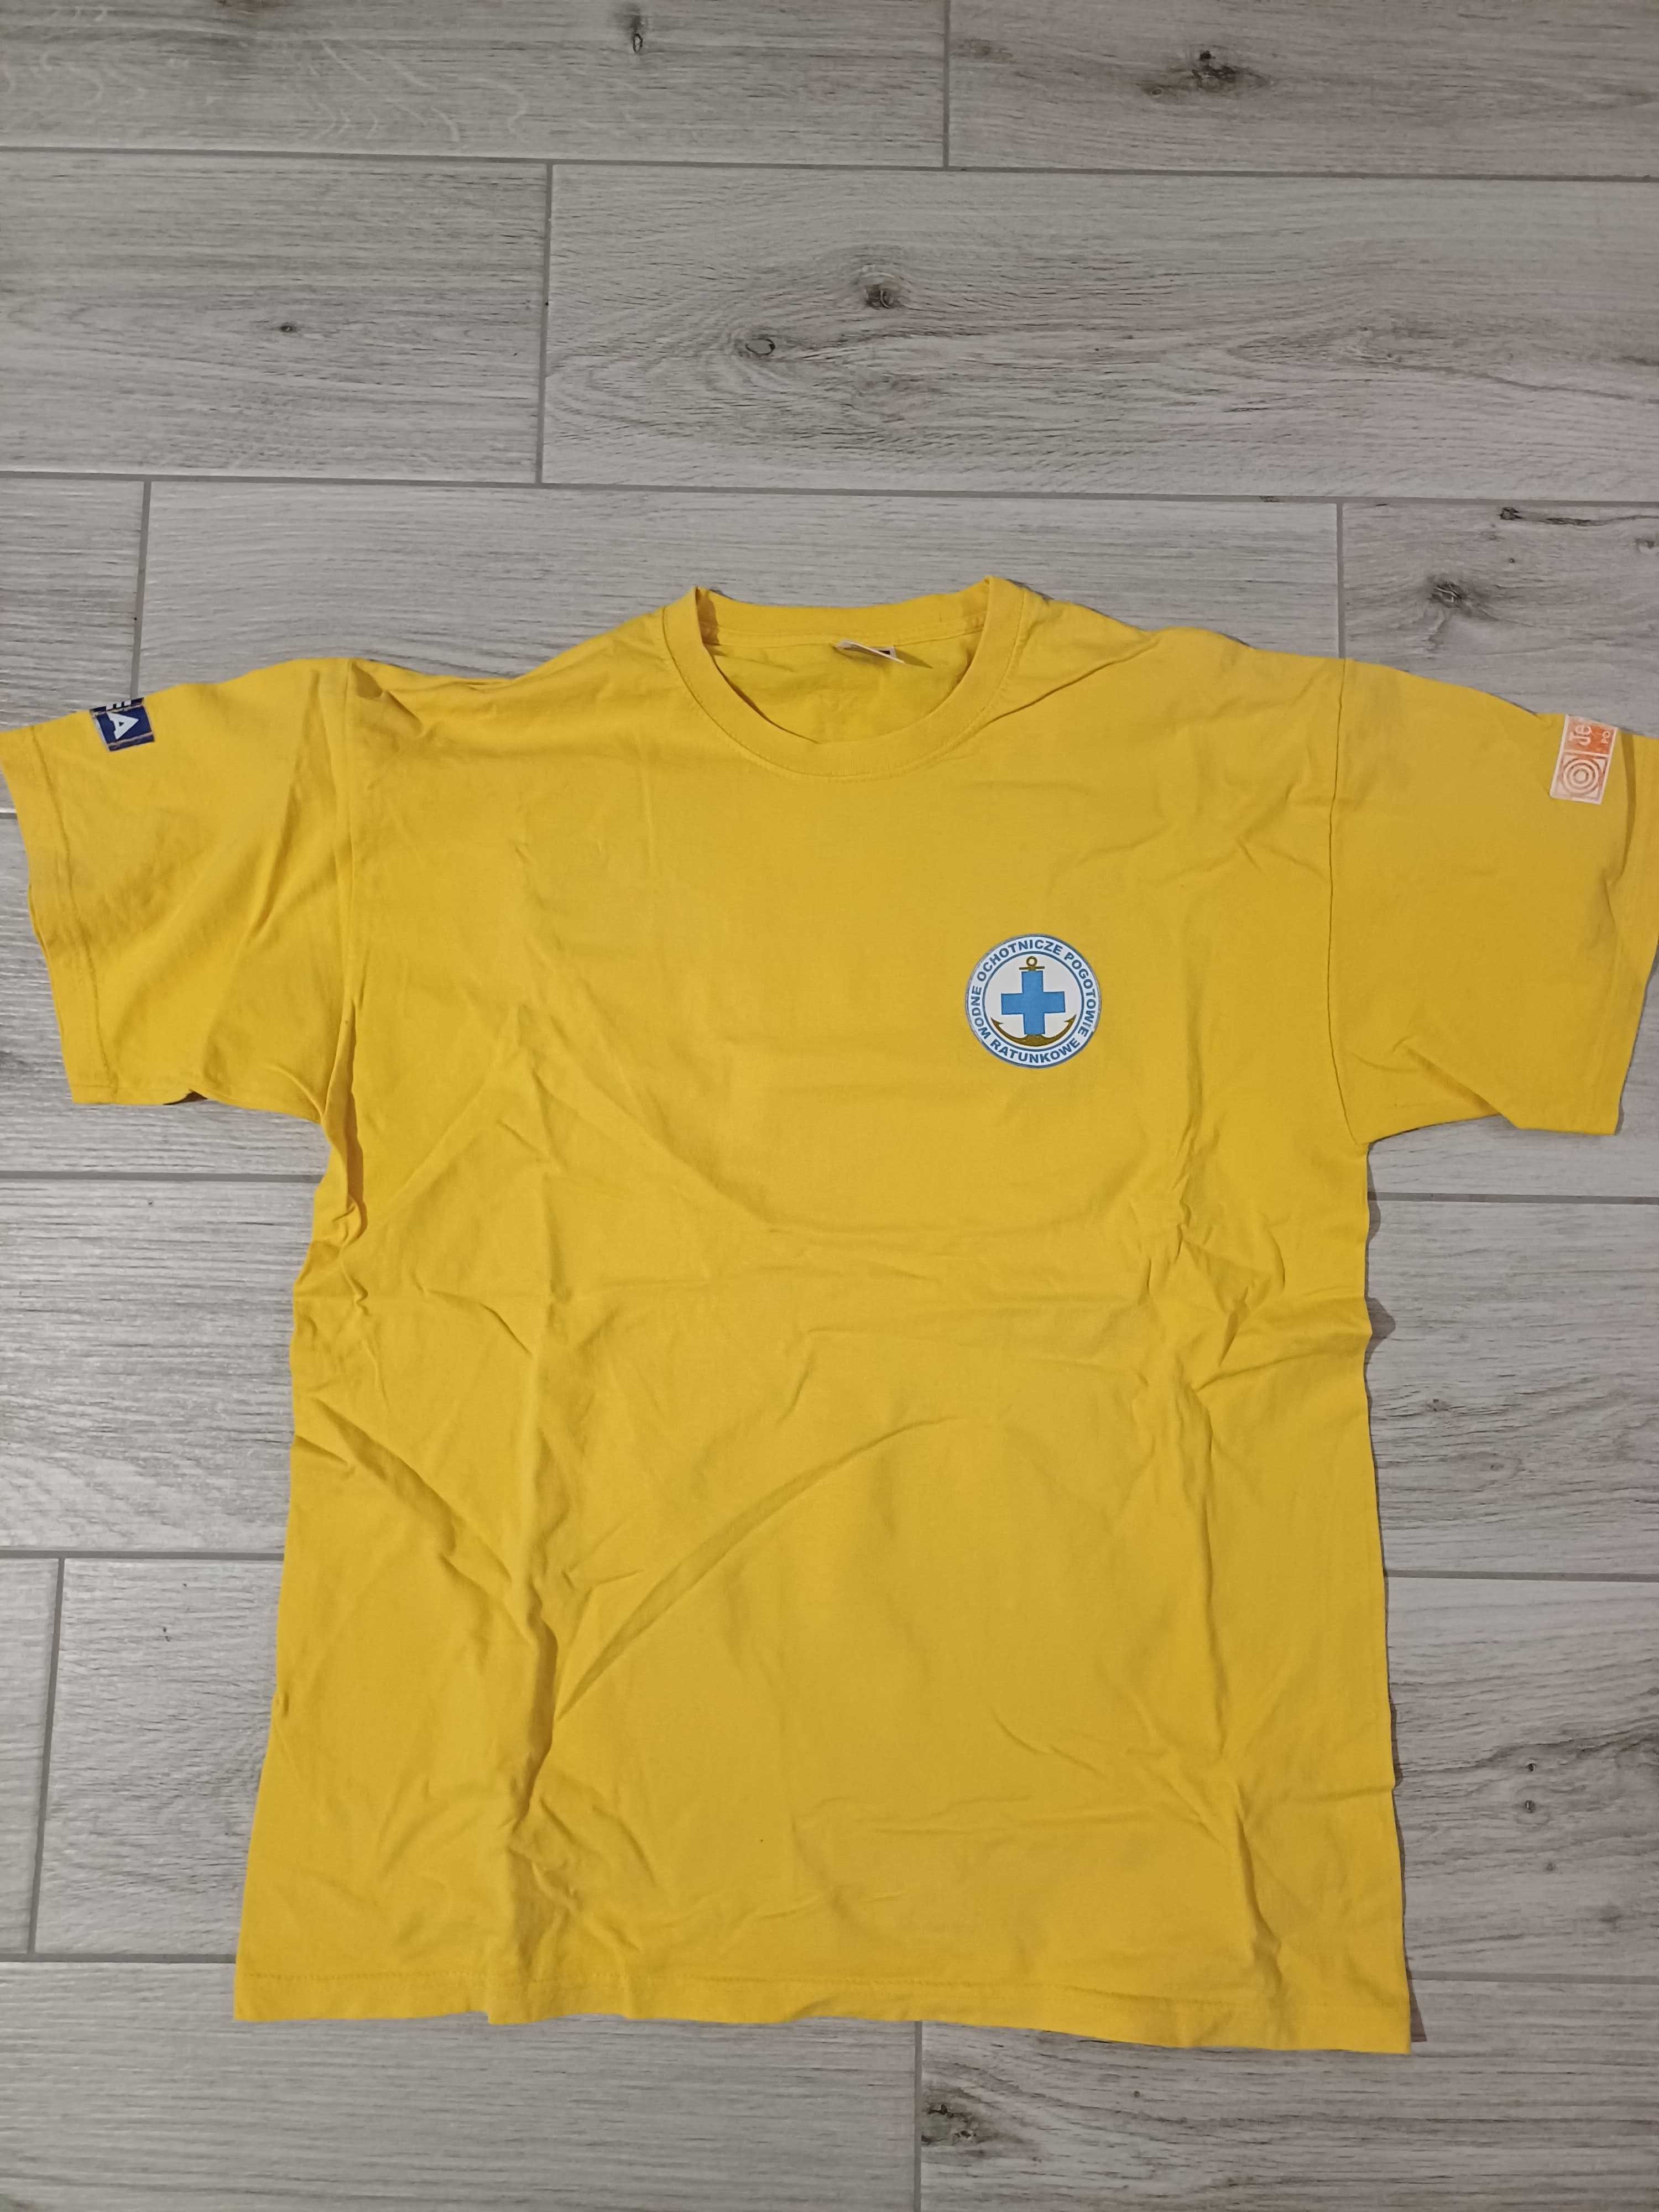 Koszulka ratownik wodny WOPR żółta